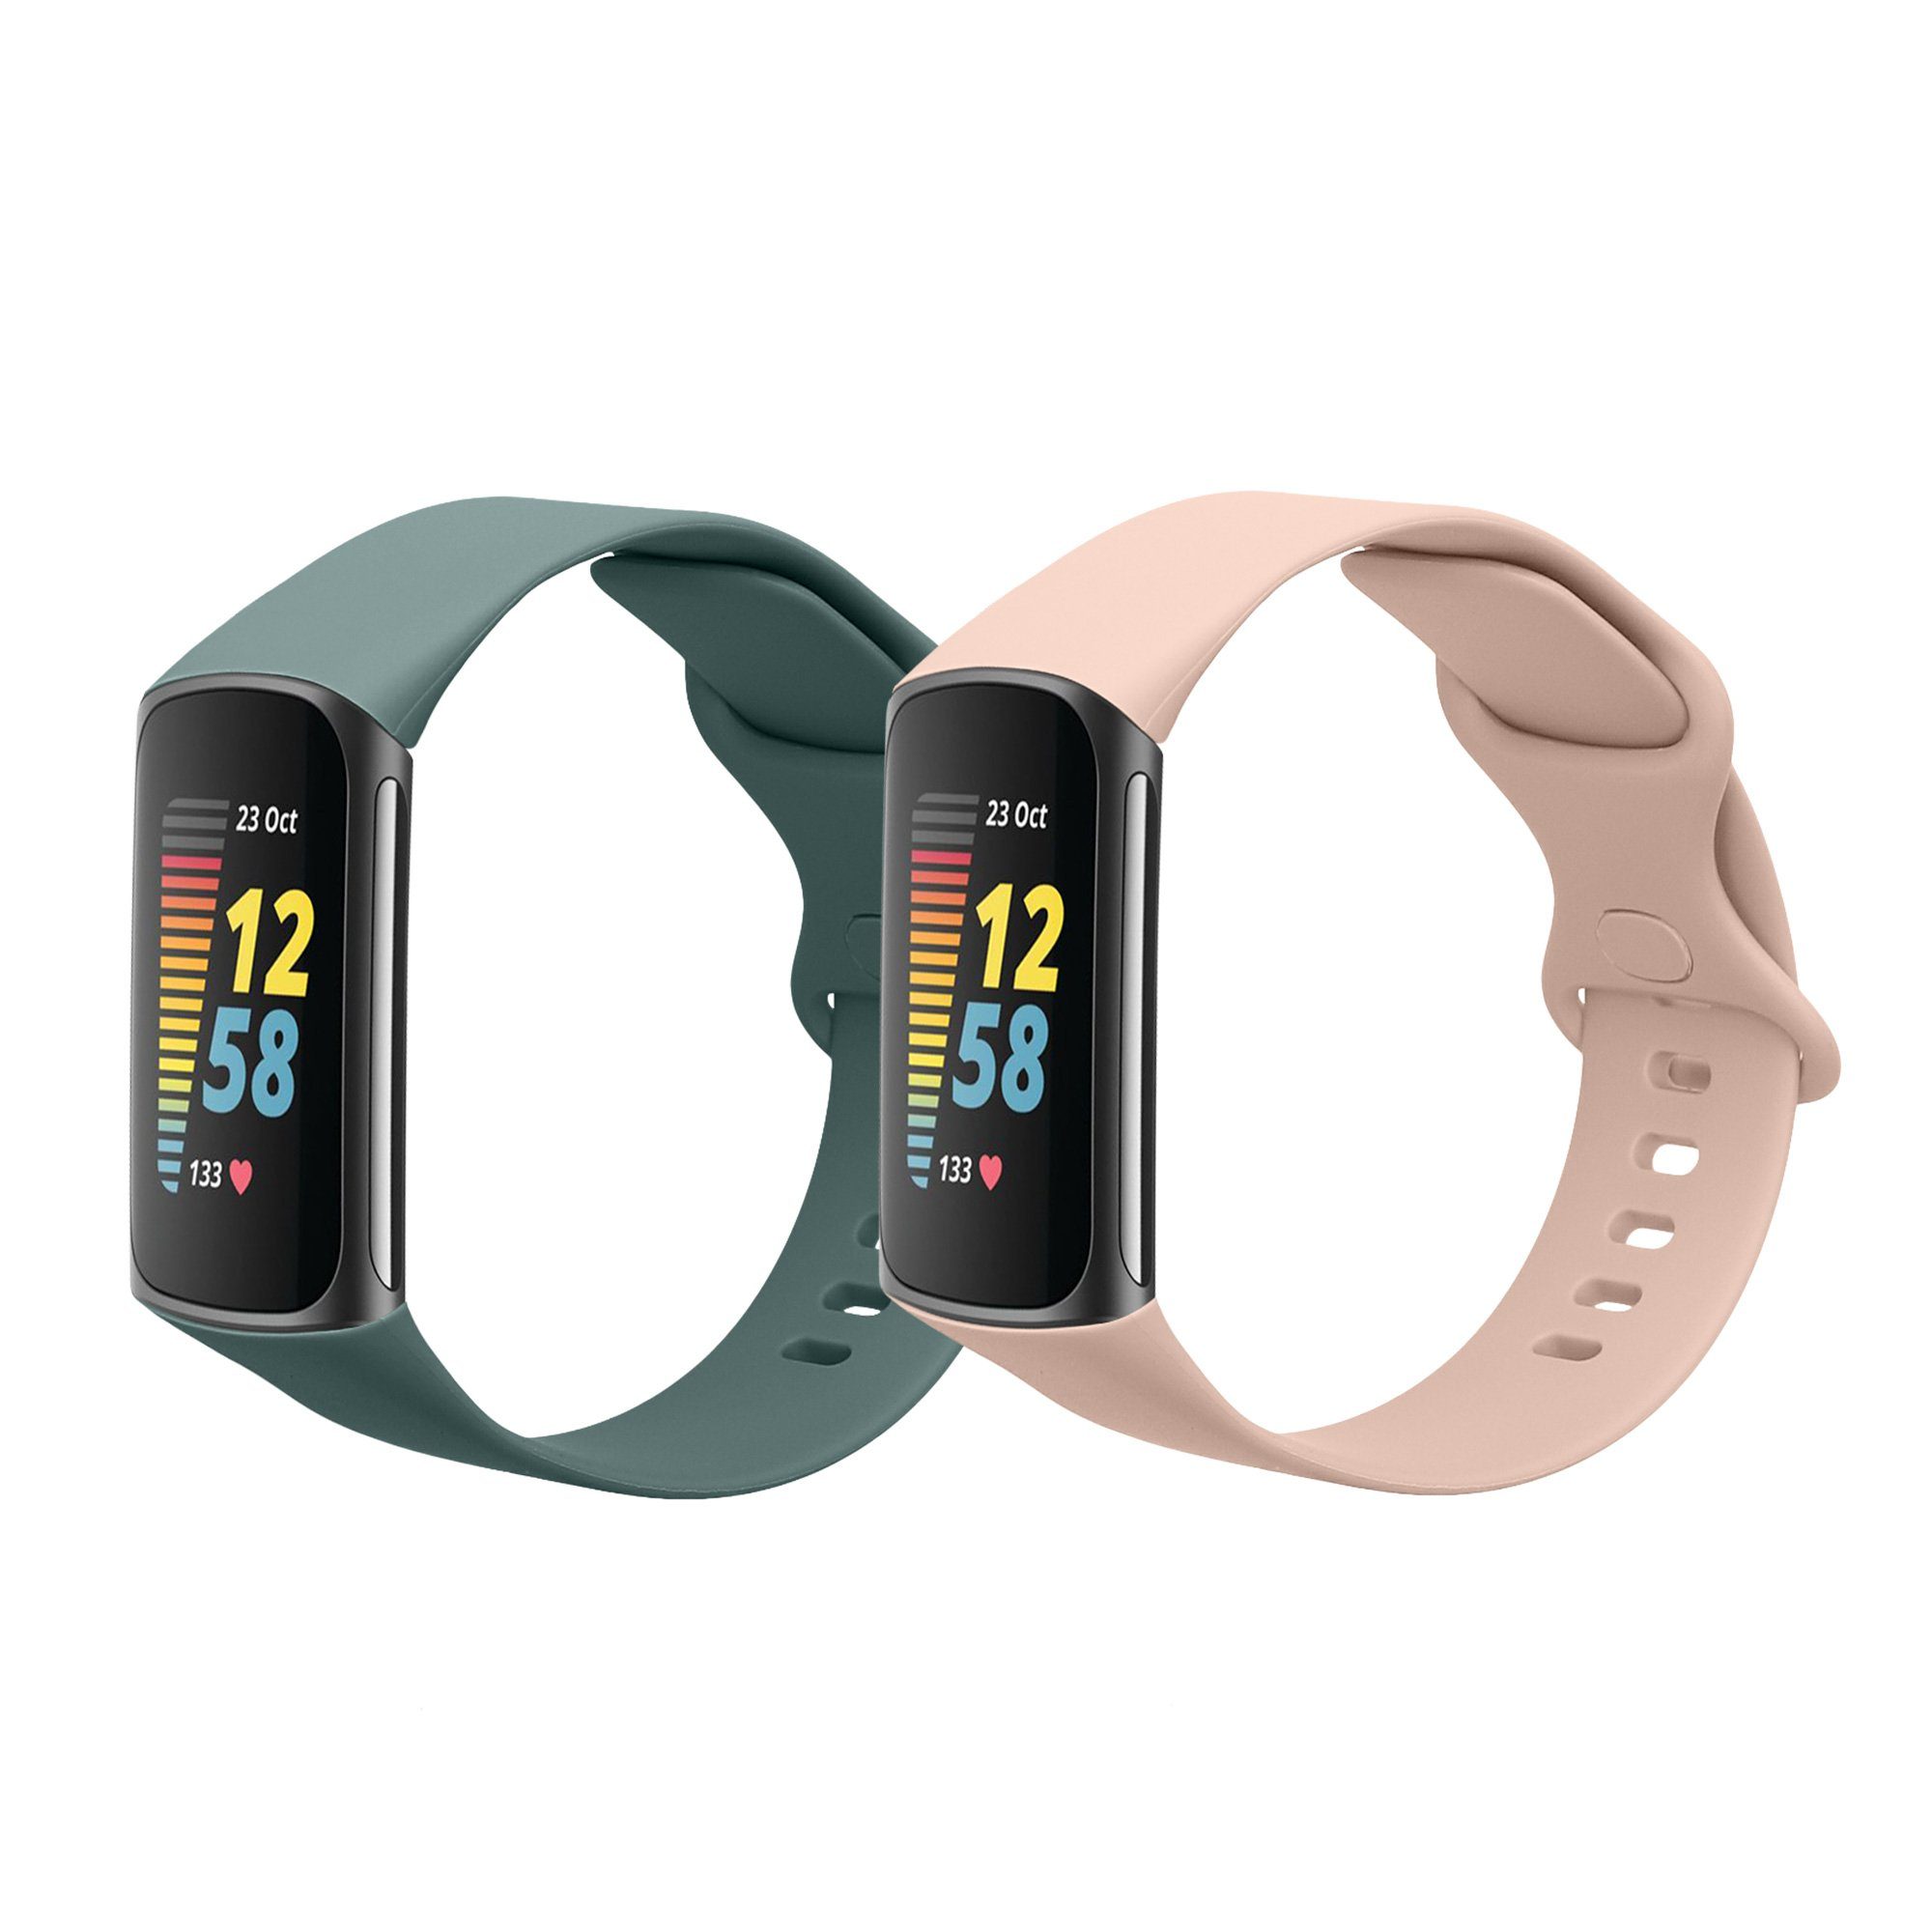 Fitbit Fitness-Tracker online kaufen | OTTO